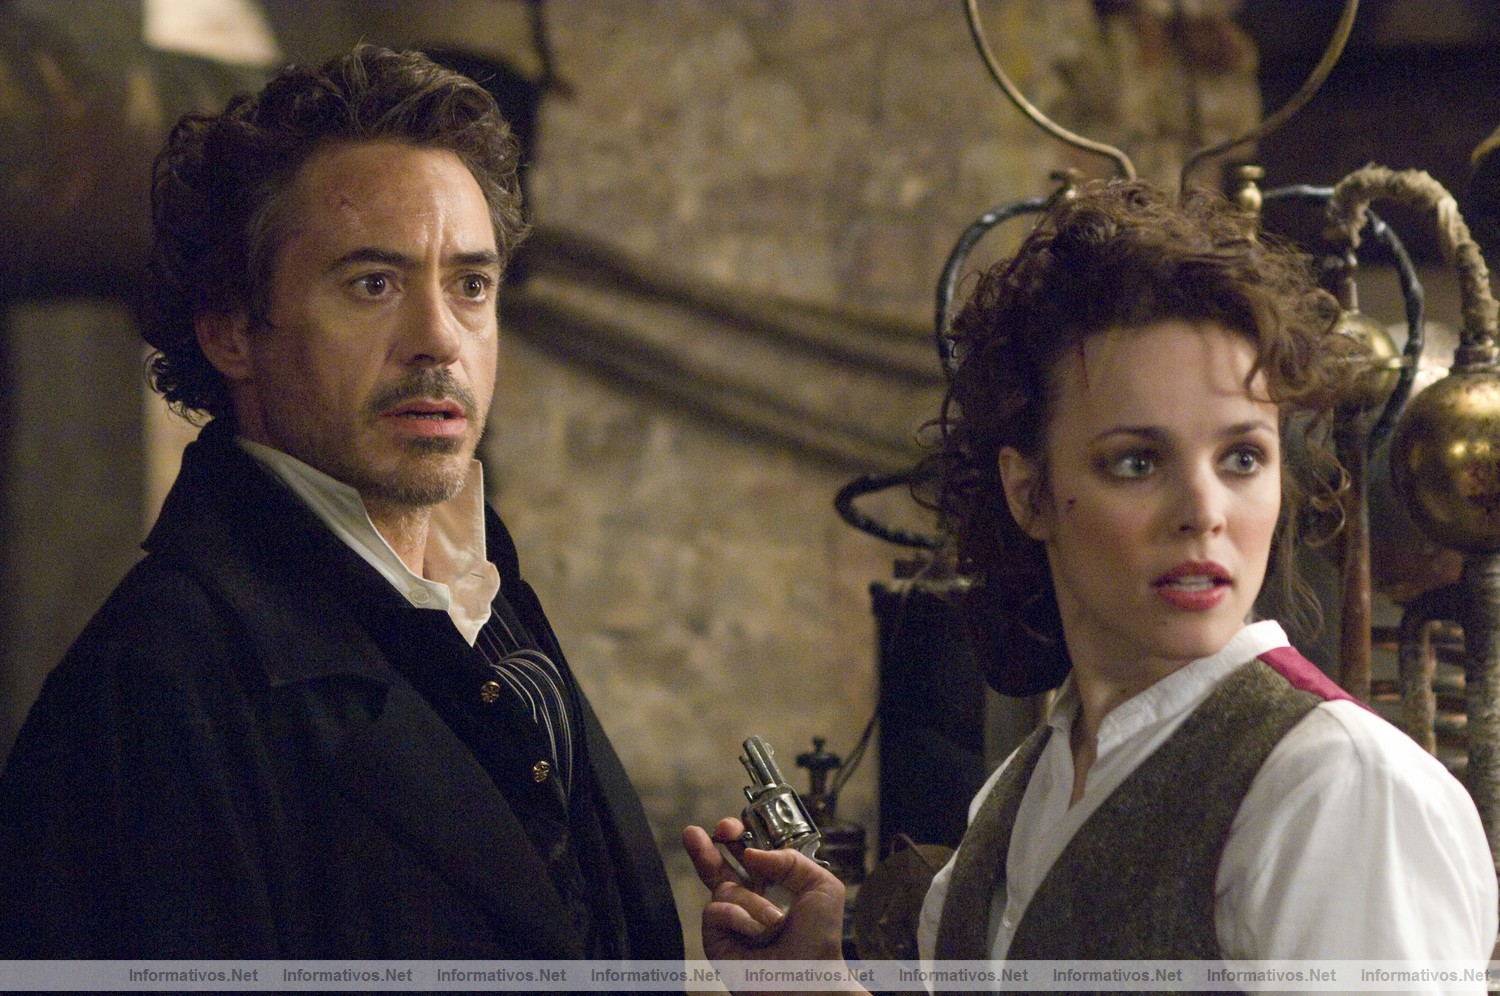 Fotograma de la película "Sherlock Holmes" que se estrenará en España el 15 de Enero de 2010